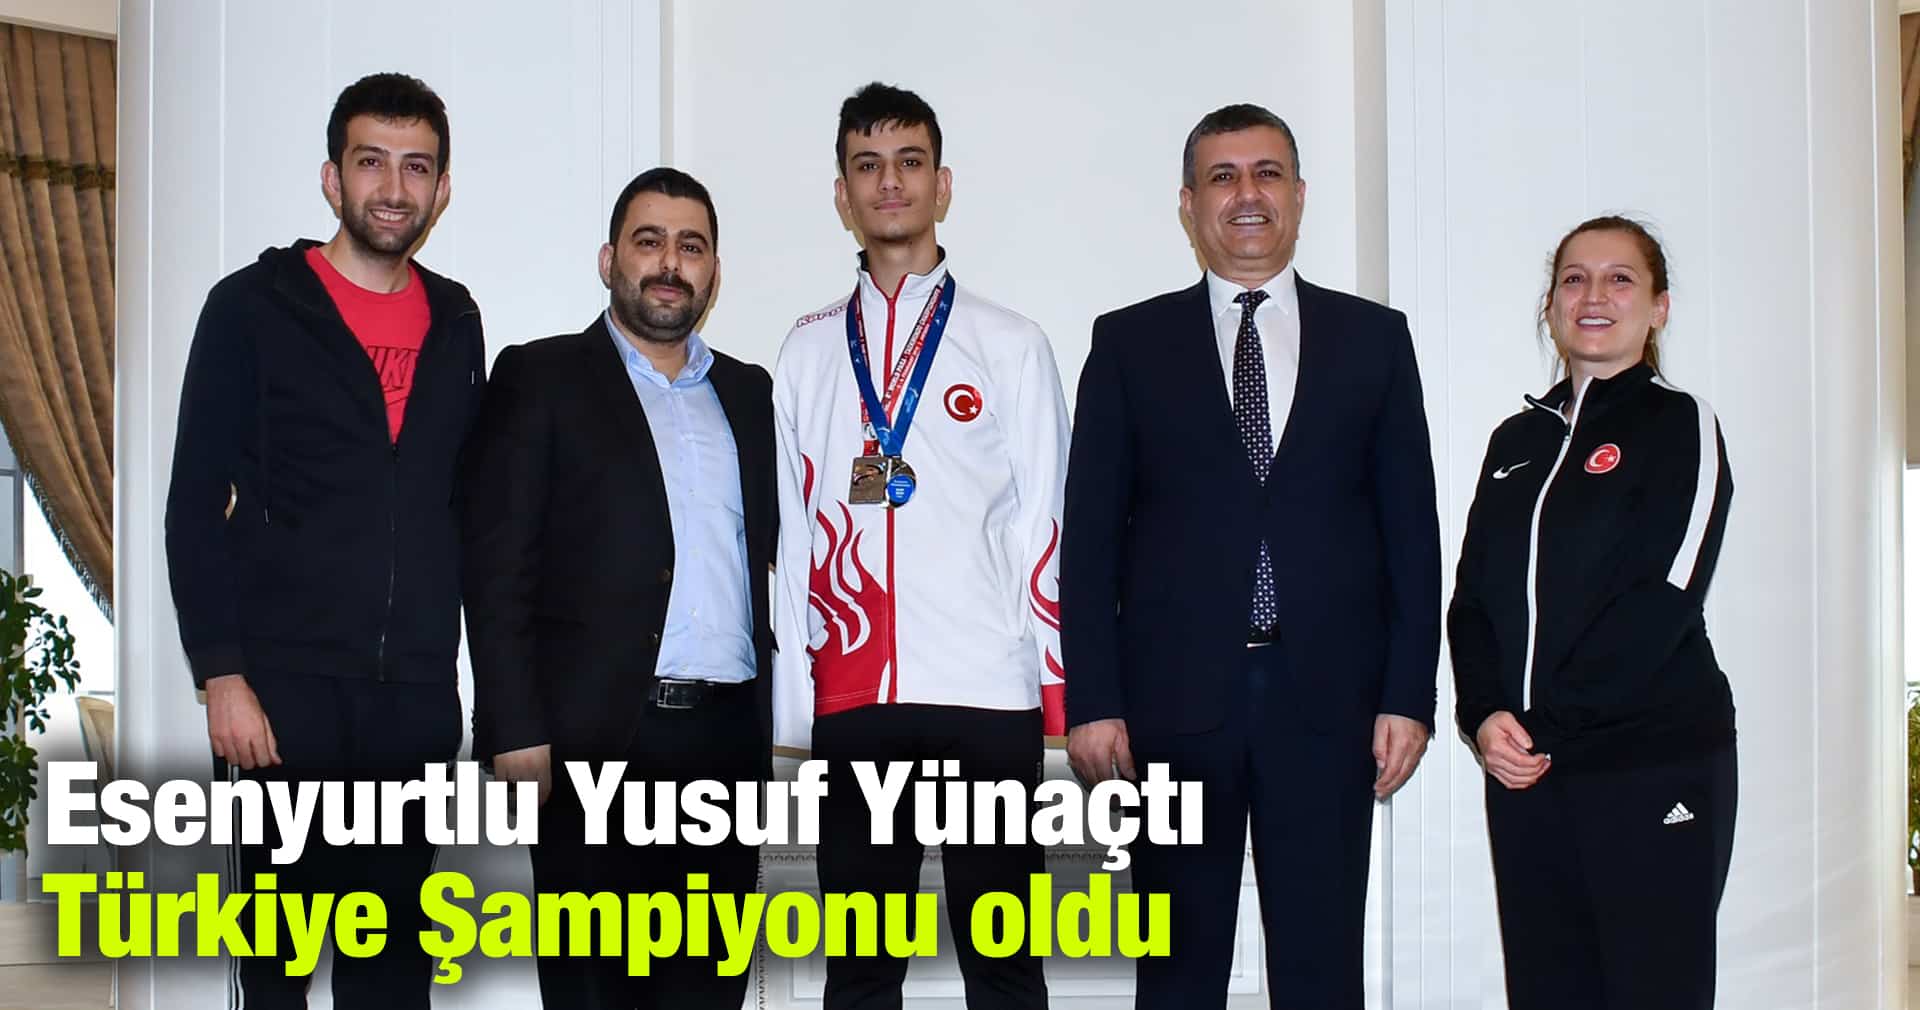 Esenyurtlu Yusuf Yünaçtı Türkiye Şampiyonu oldu